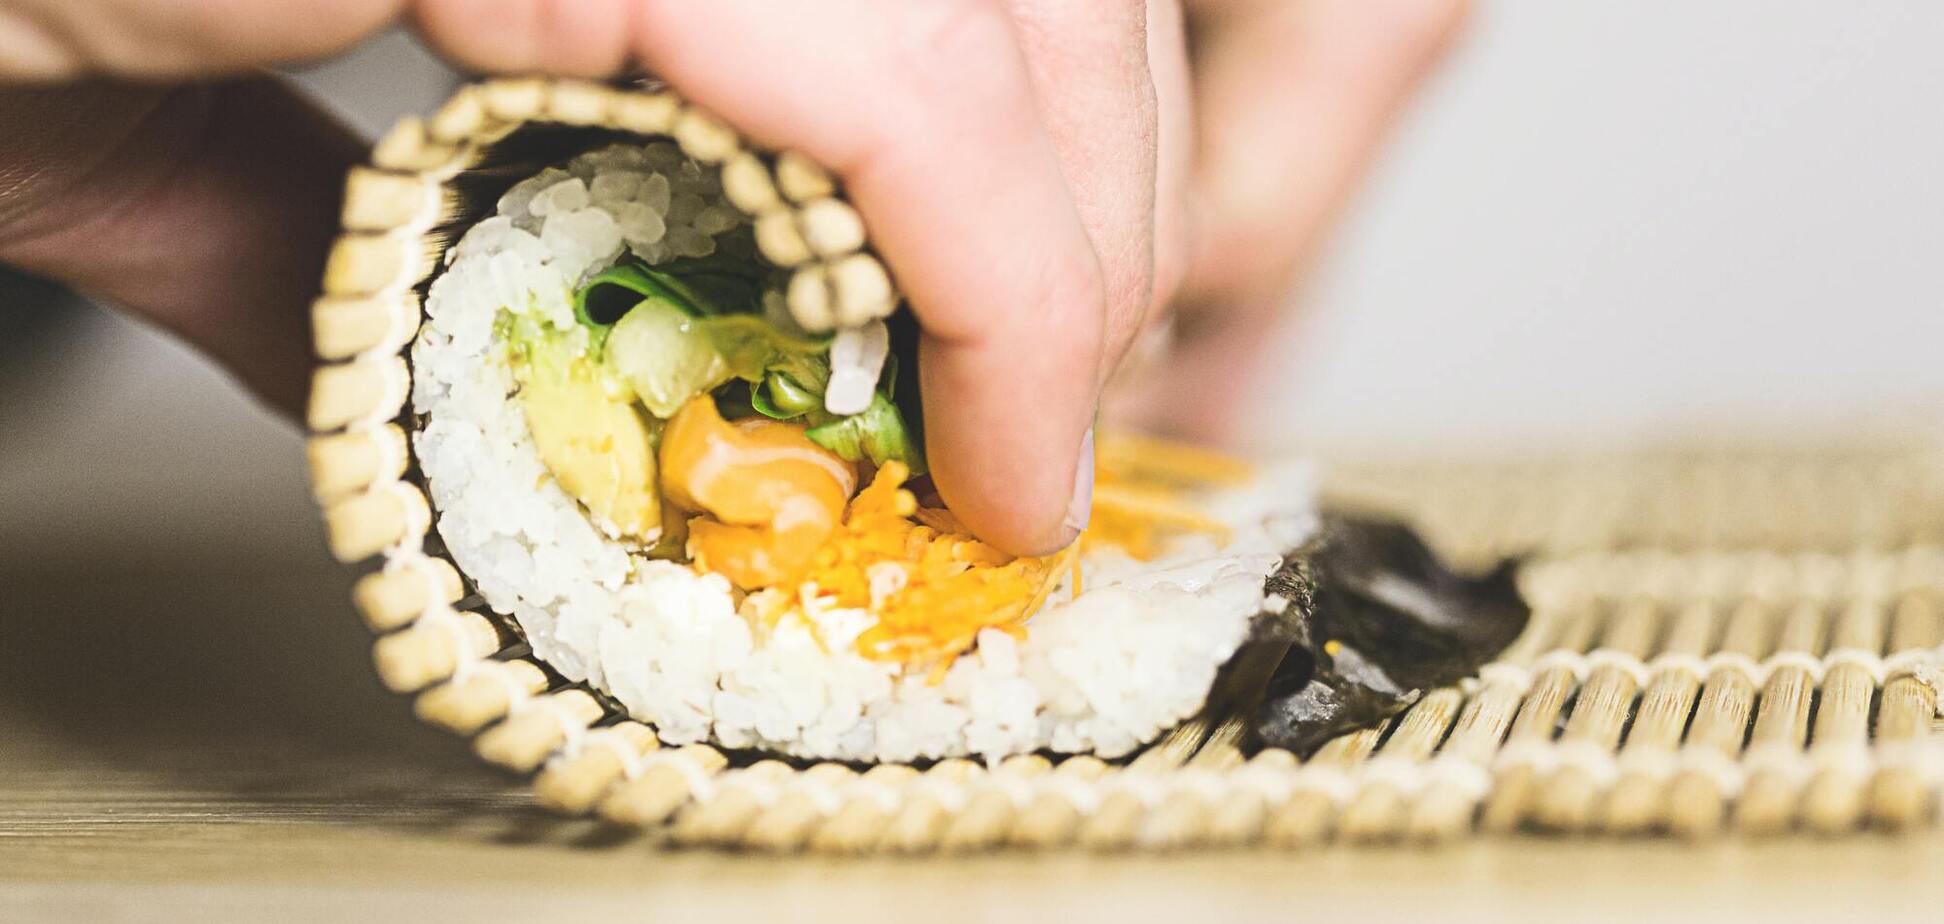 как варить рис для суши